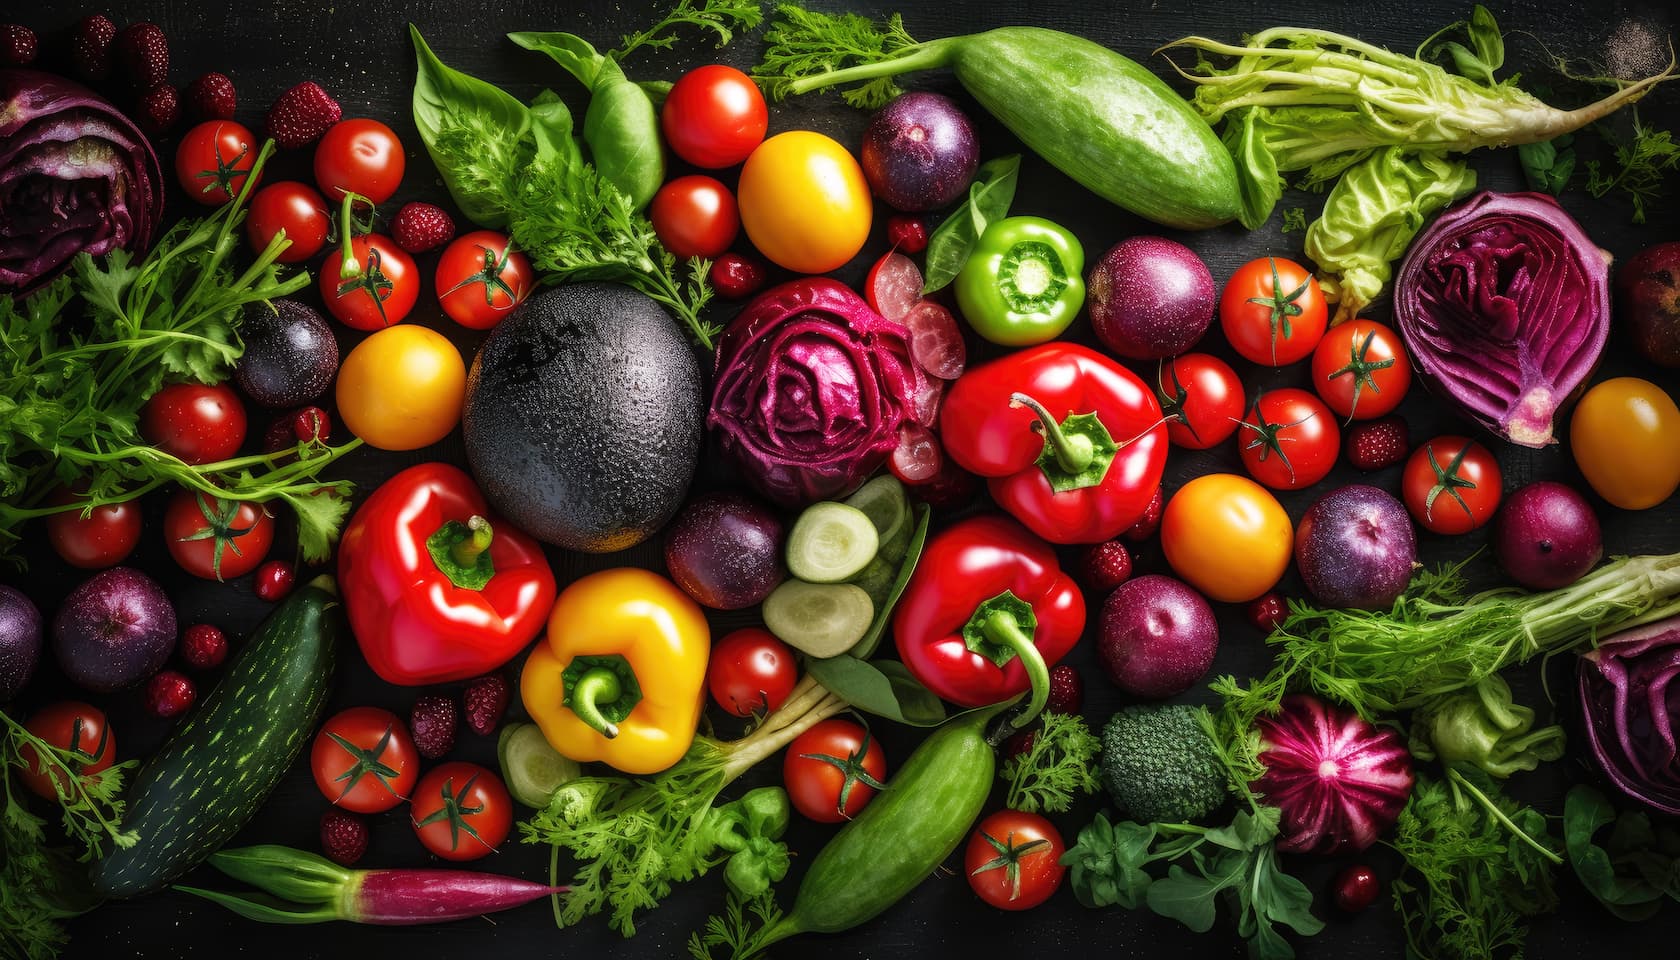 5 claves para elegir bien las frutas y hortalizas de temporada que vas a consumir